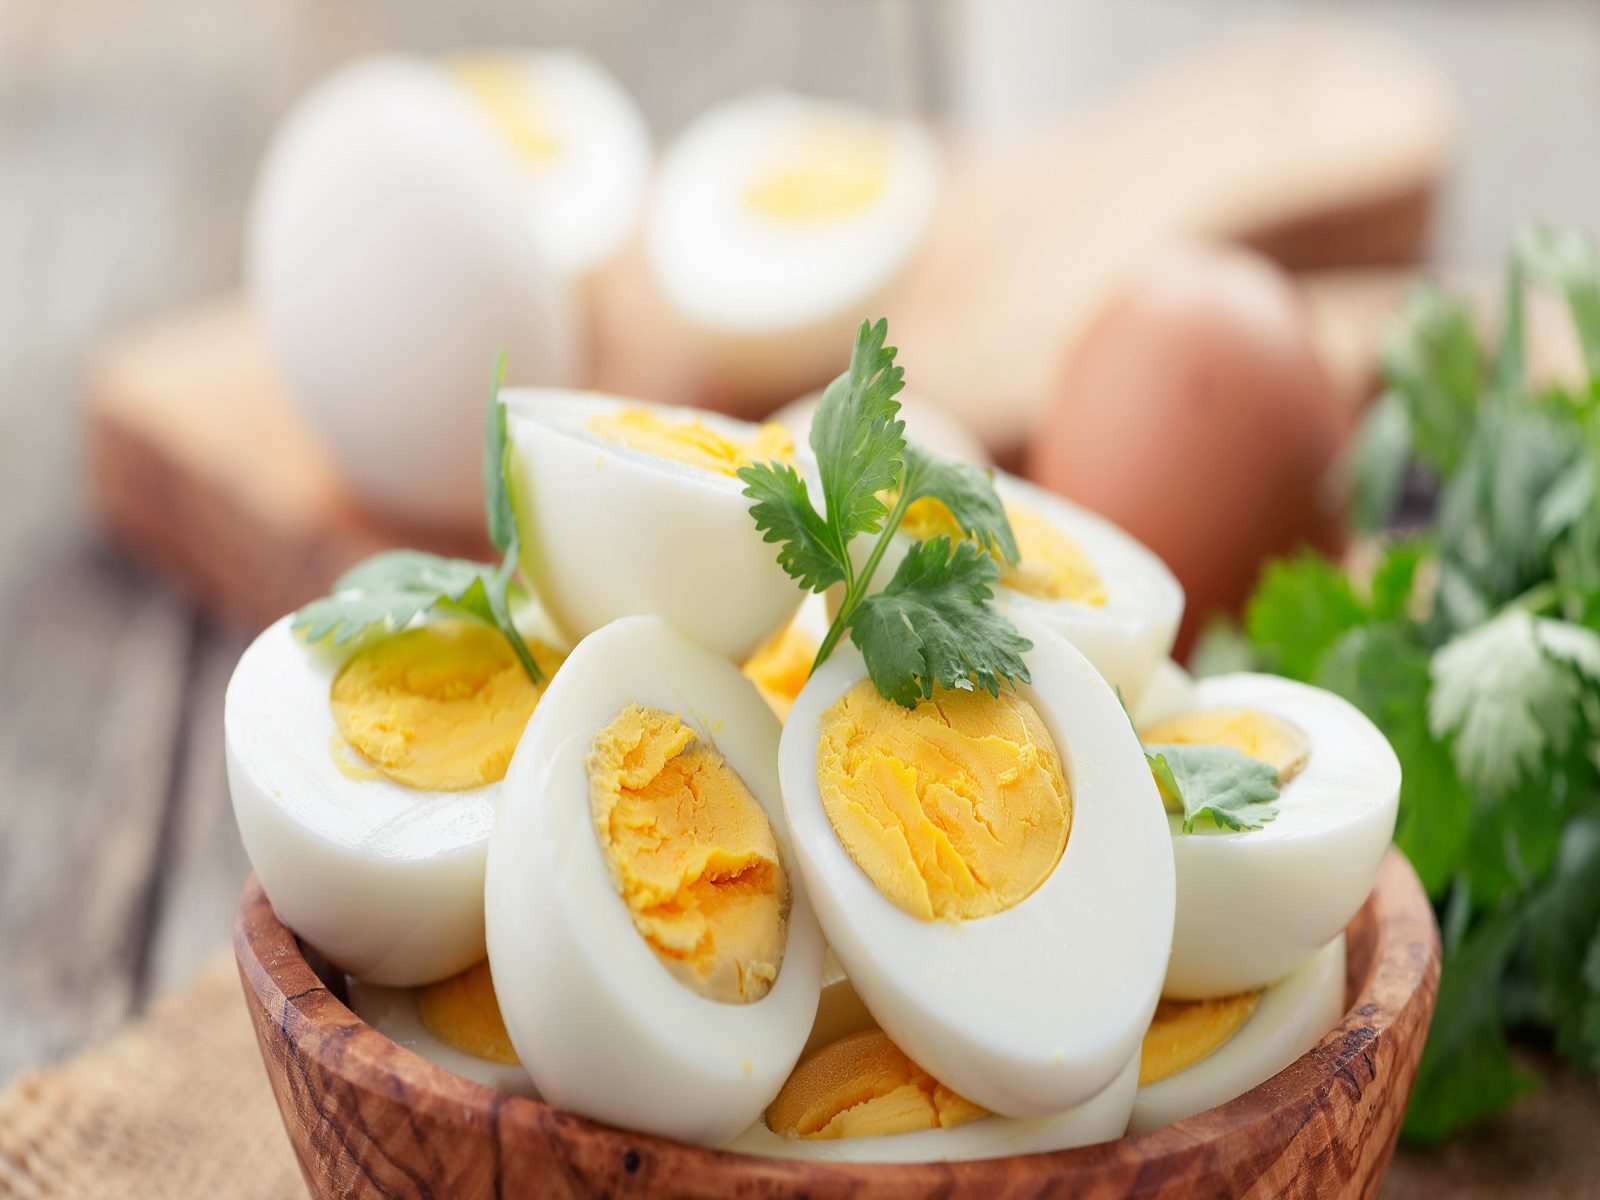 सर्दी में उबले हुए अंडे की जरूरत क्यों है ज्यादा, जानिए कारण - health news  why we need boiled eggs in winter know the facts lak – News18 हिंदी